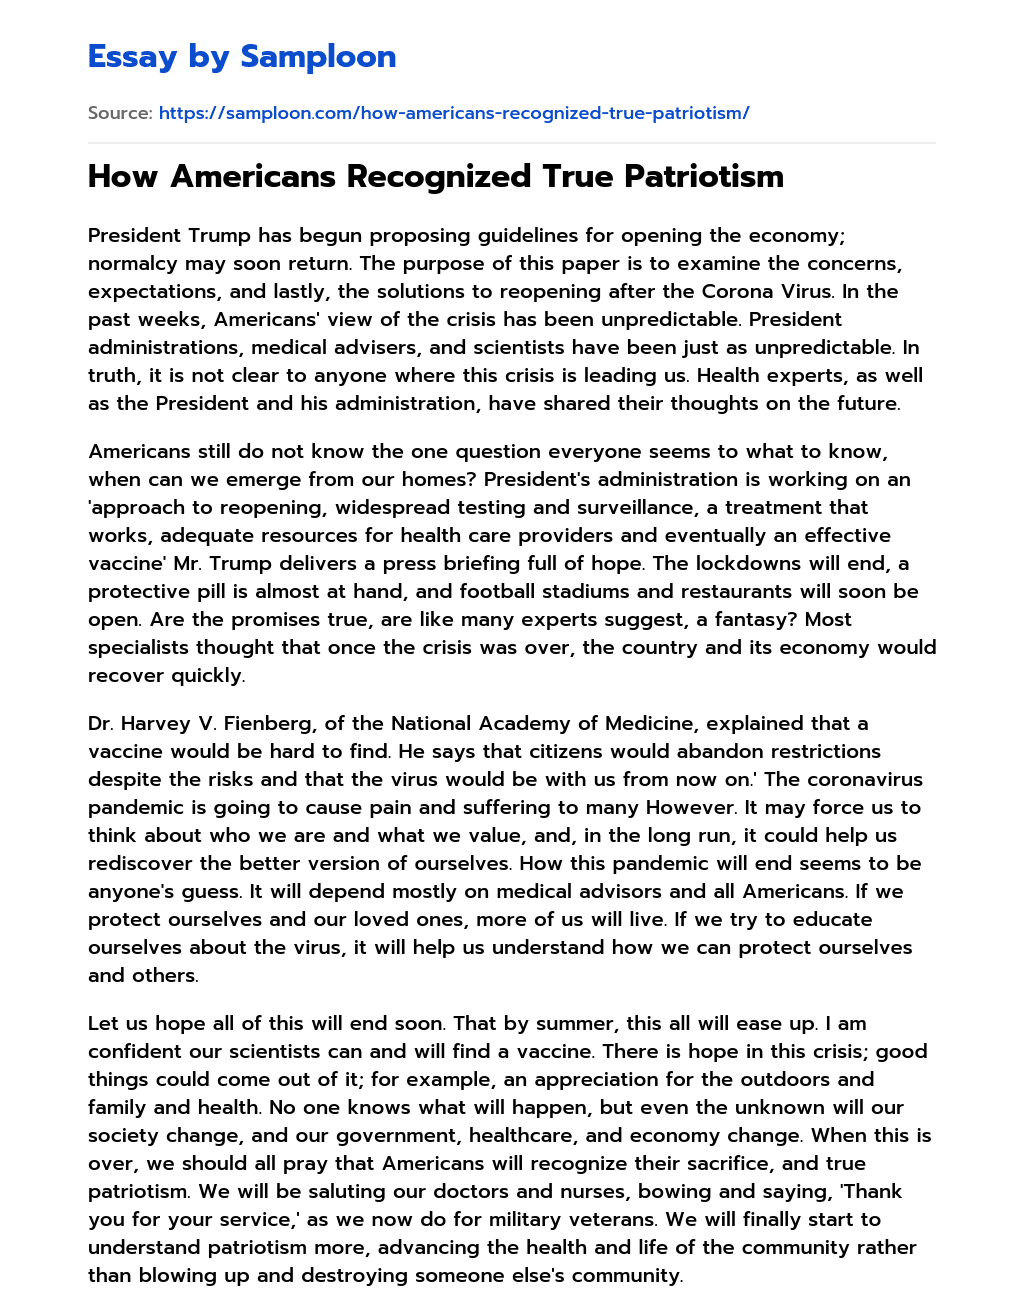 How Americans Recognized True Patriotism essay